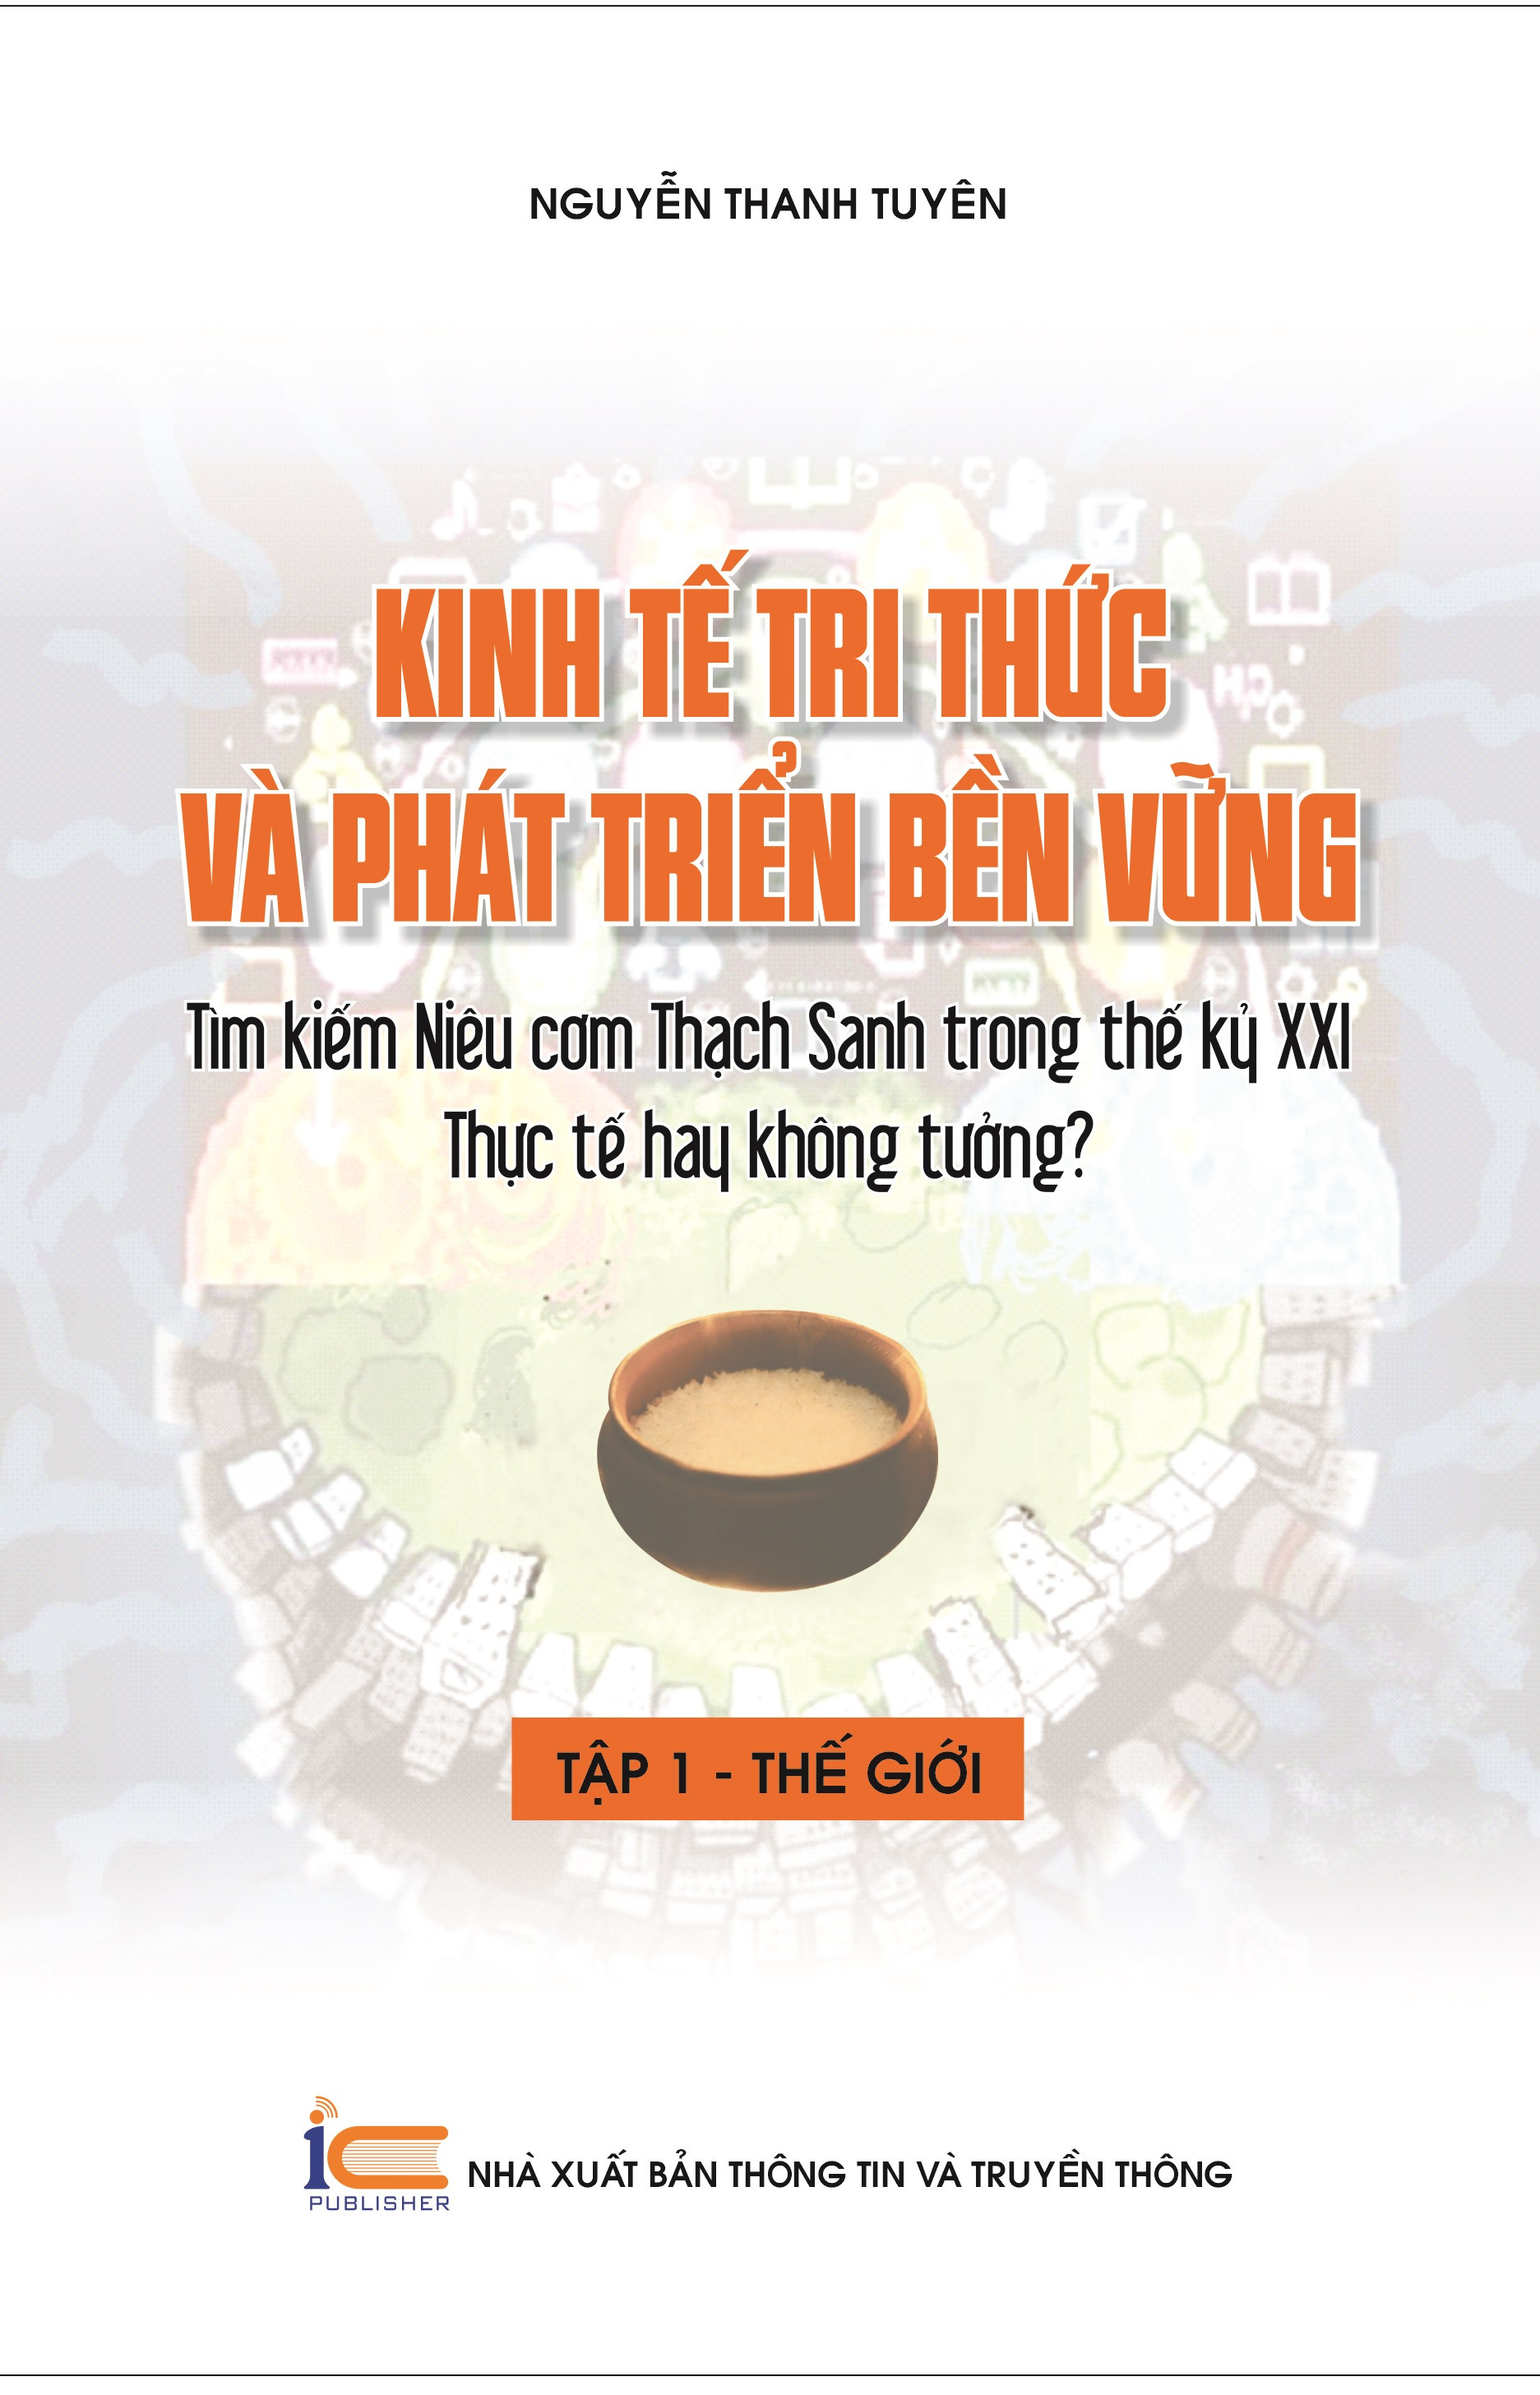 Kinh Tế Tri Thức Và Phát Triển Bền Vững - Nguyễn Thanh Tuyên - (bìa mềm)